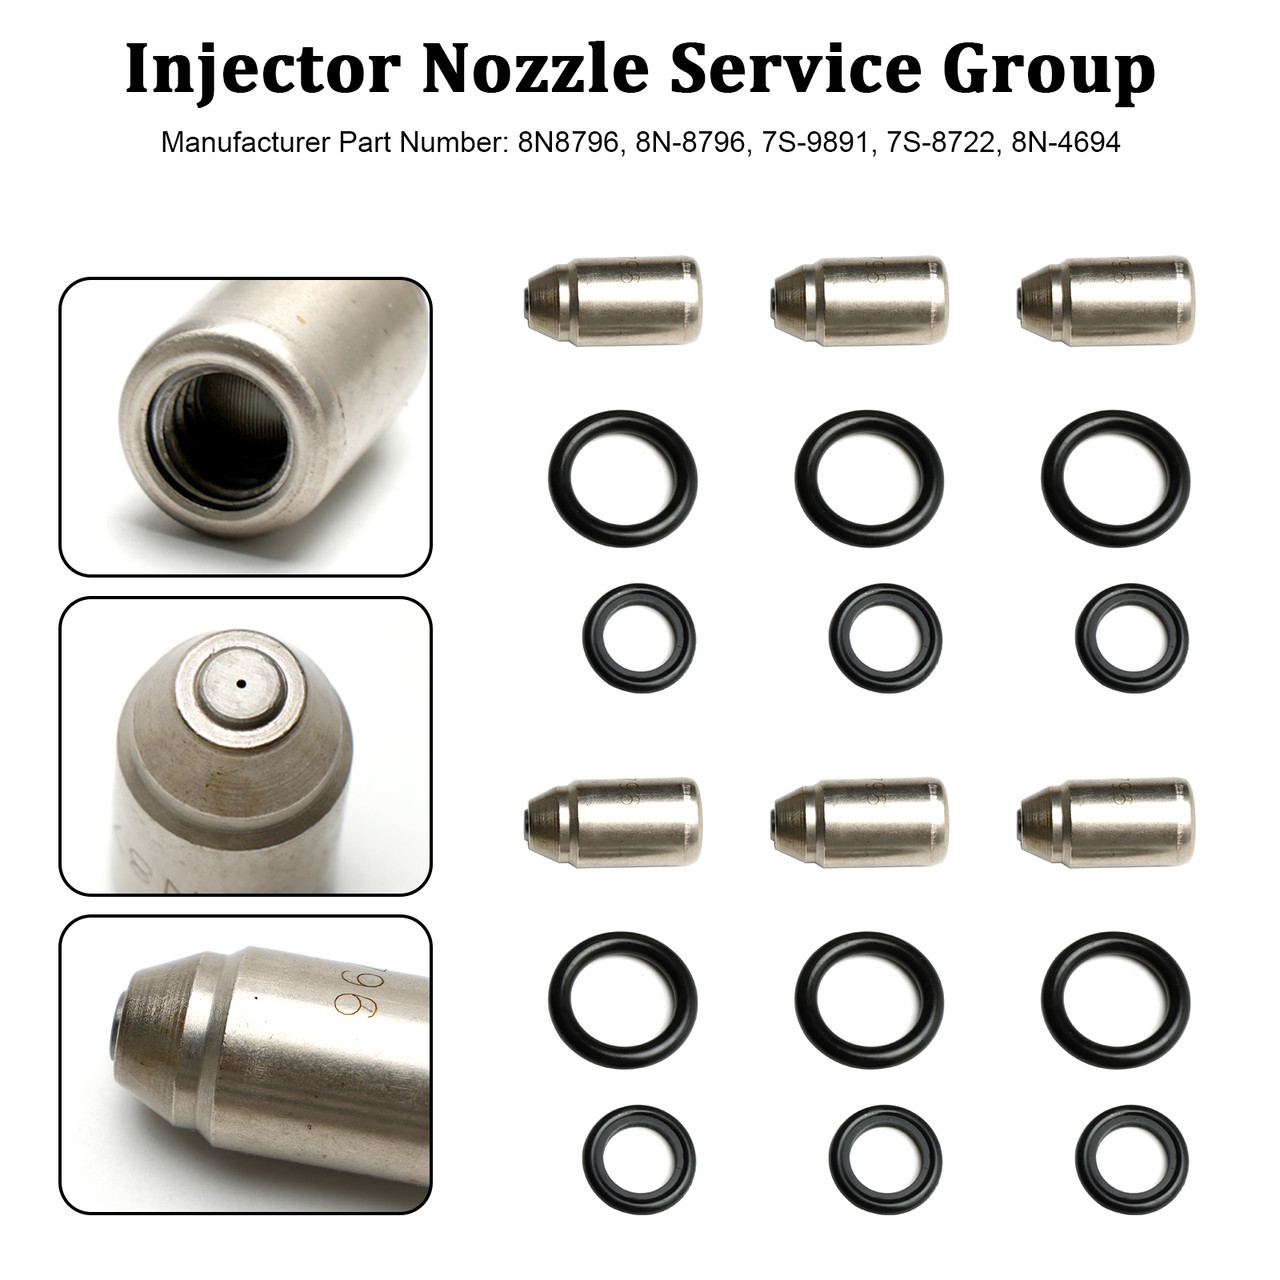 6PCS Injectors Nozzle Service Group 8N8796 Fit Caterpillar 3304 3306 D330C D333C